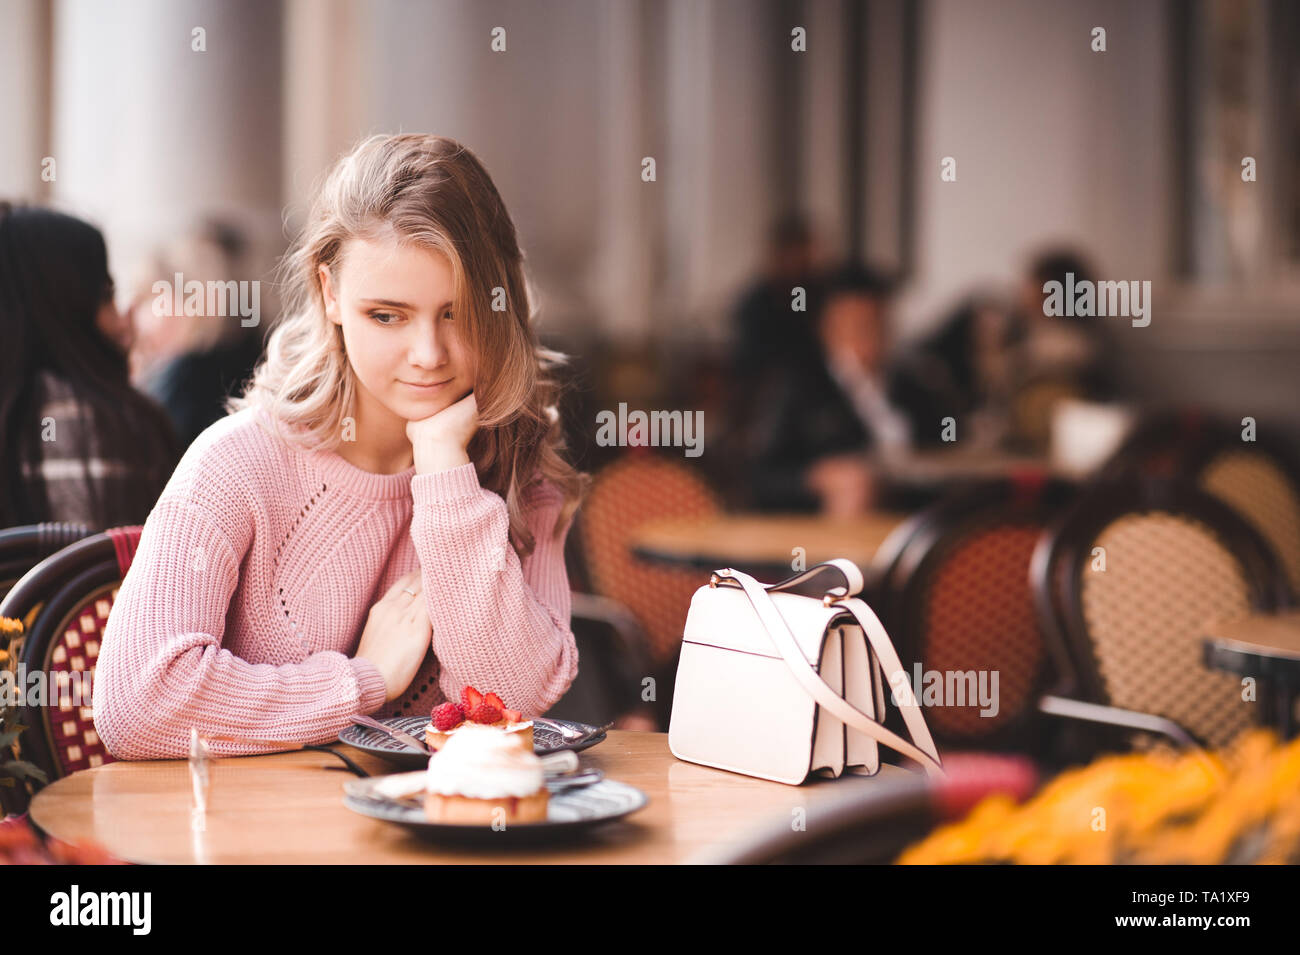 Jovencita rubia 16-17 años comiendo torta sentarse en cafeterías al aire libre. La temporada de verano. Foto de stock